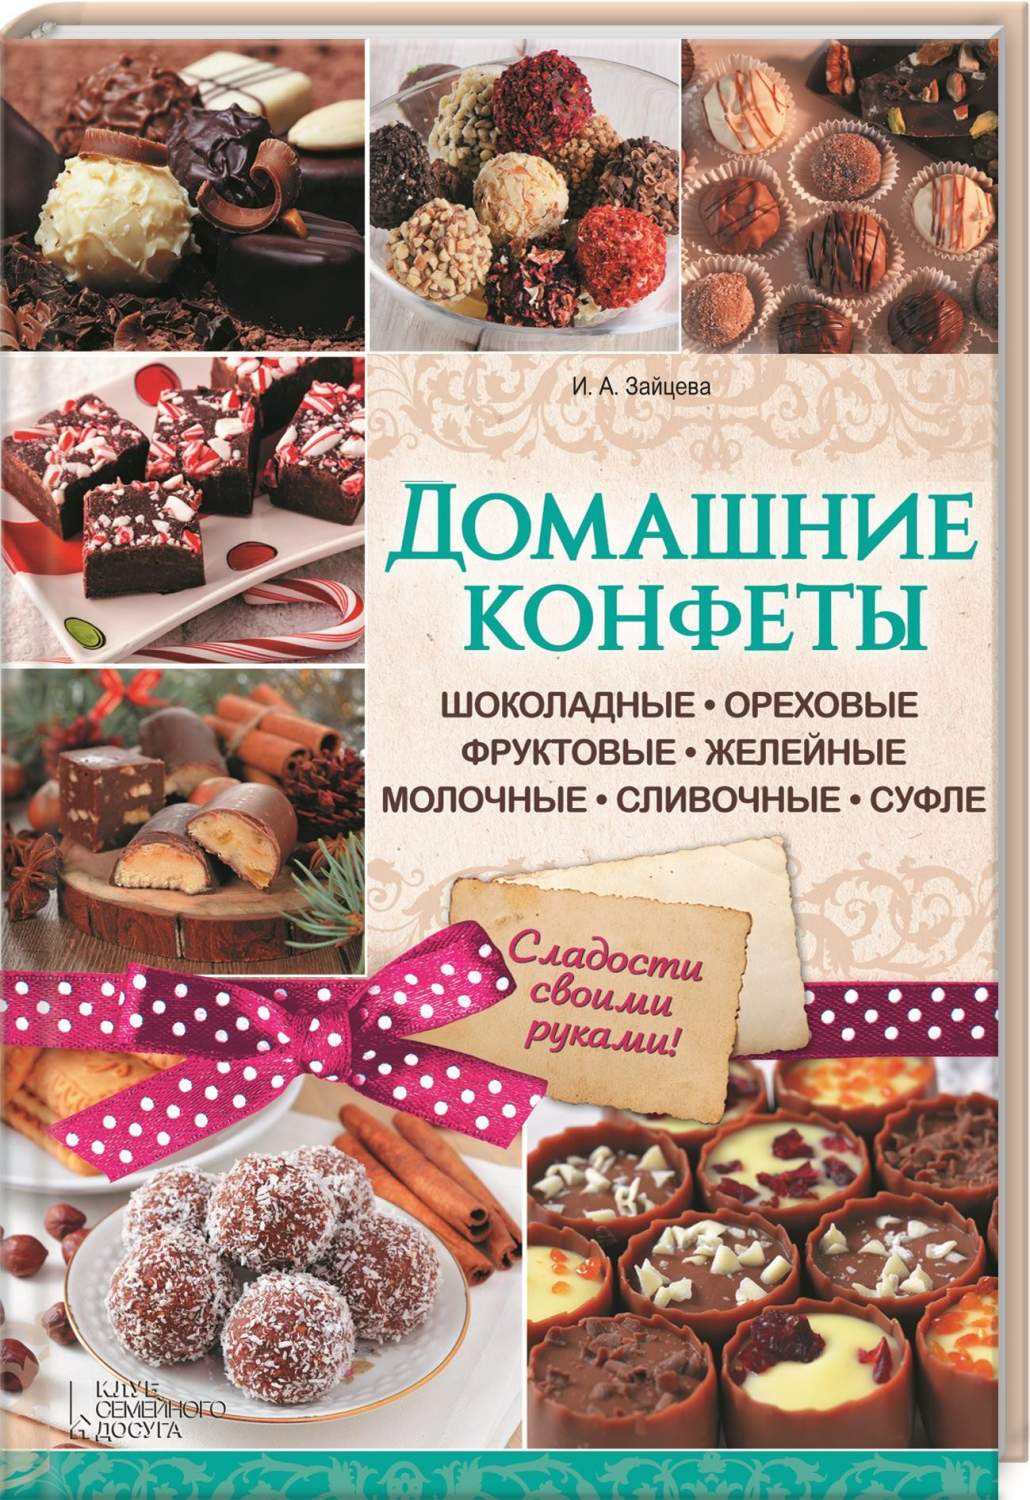 Конфеты своими руками - рецепты с фото и видео на natali-fashion.ru